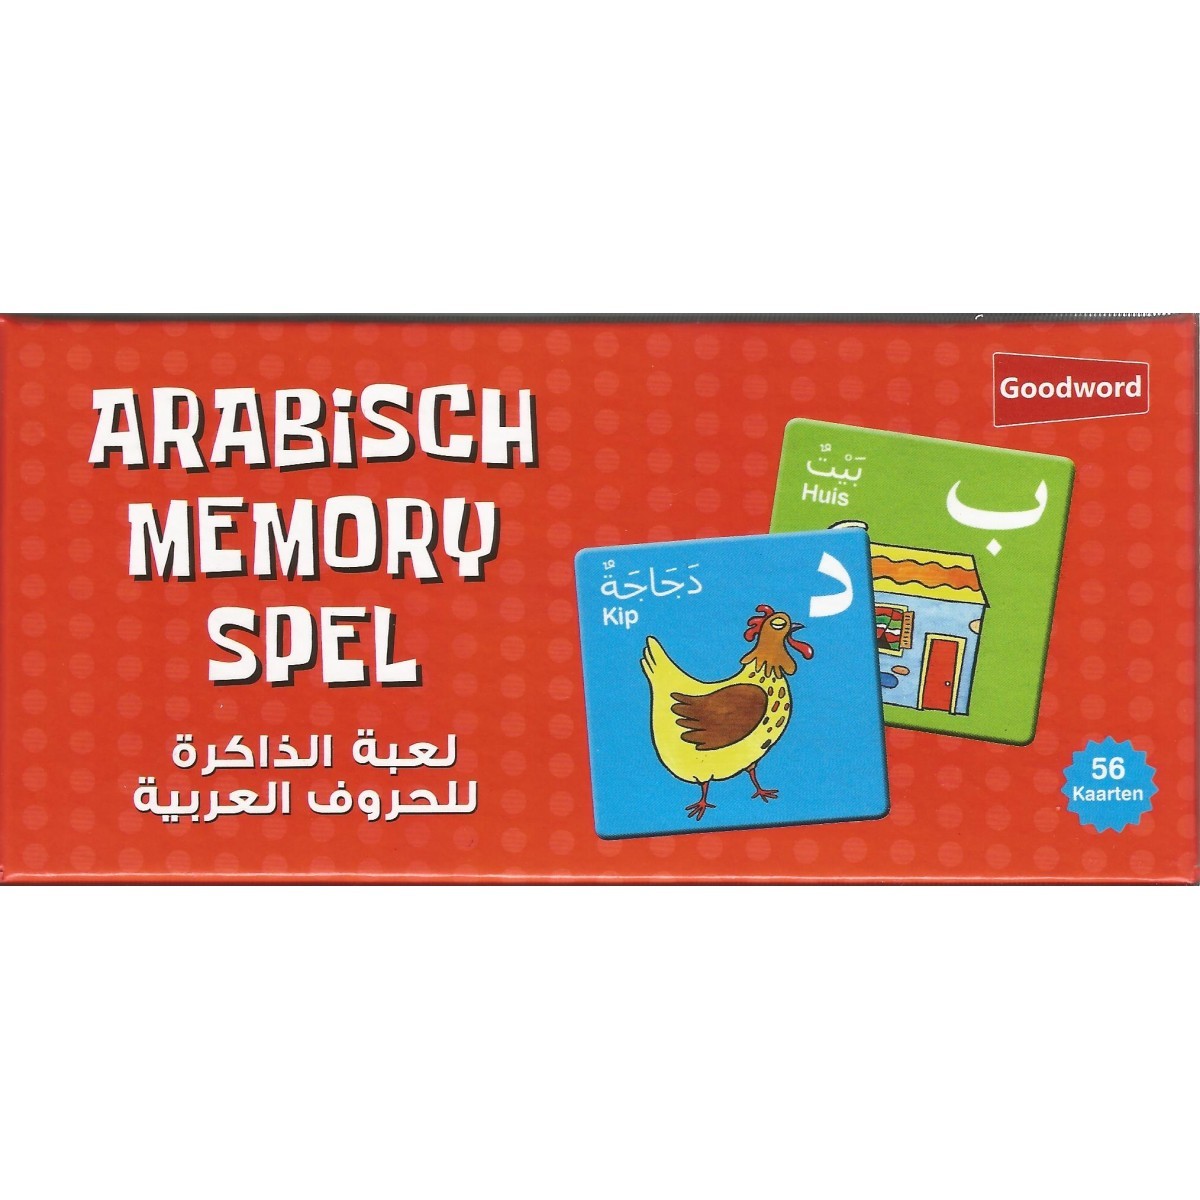 Arabische Memory Spel